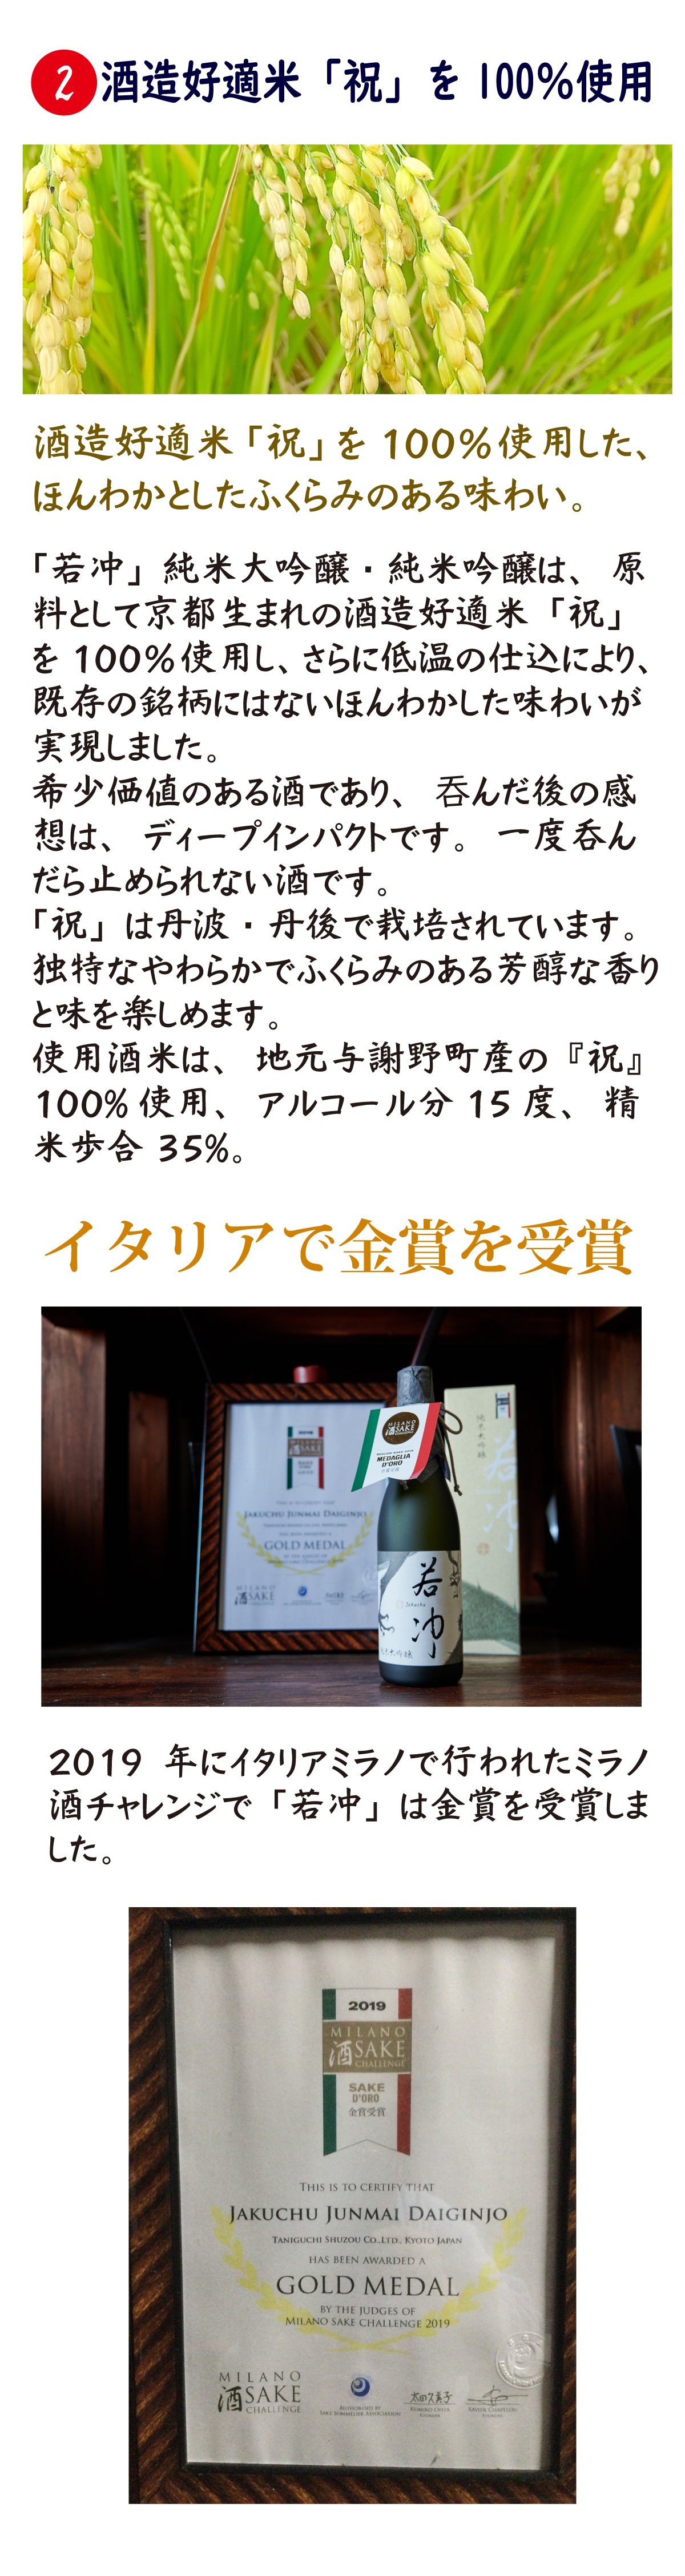  京都丹後の日本酒「若冲」